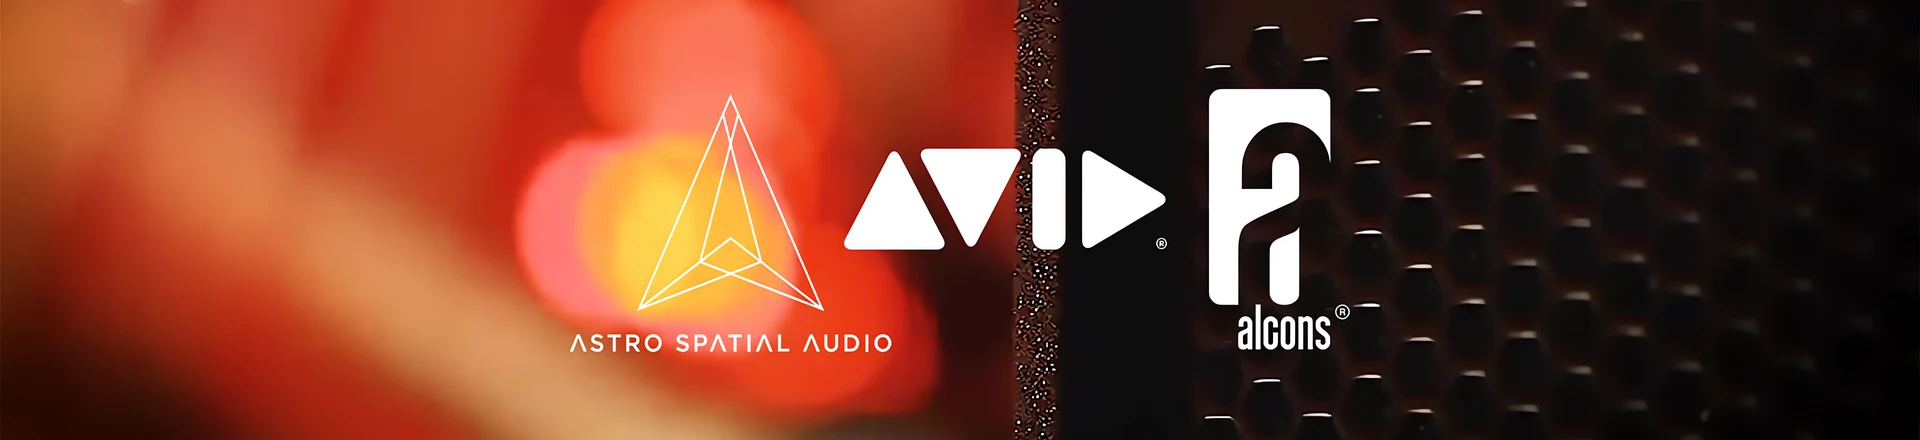 InfoComm'19: Alcons łączy siły z Avid i Astro Spartial Audio